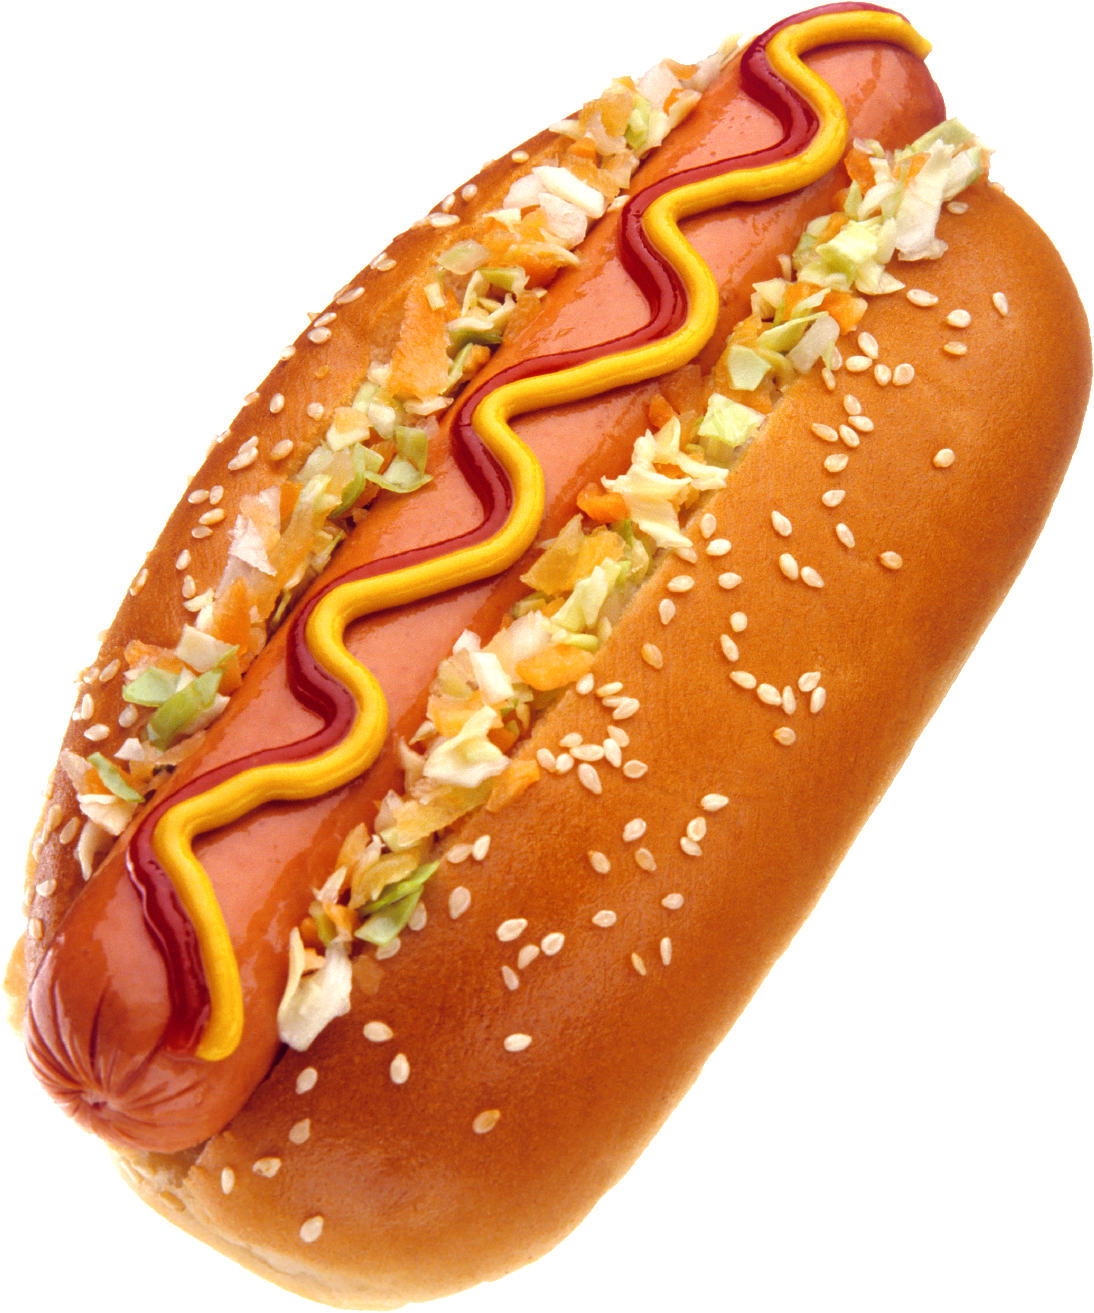 Hot Dog Transparent PNG Image